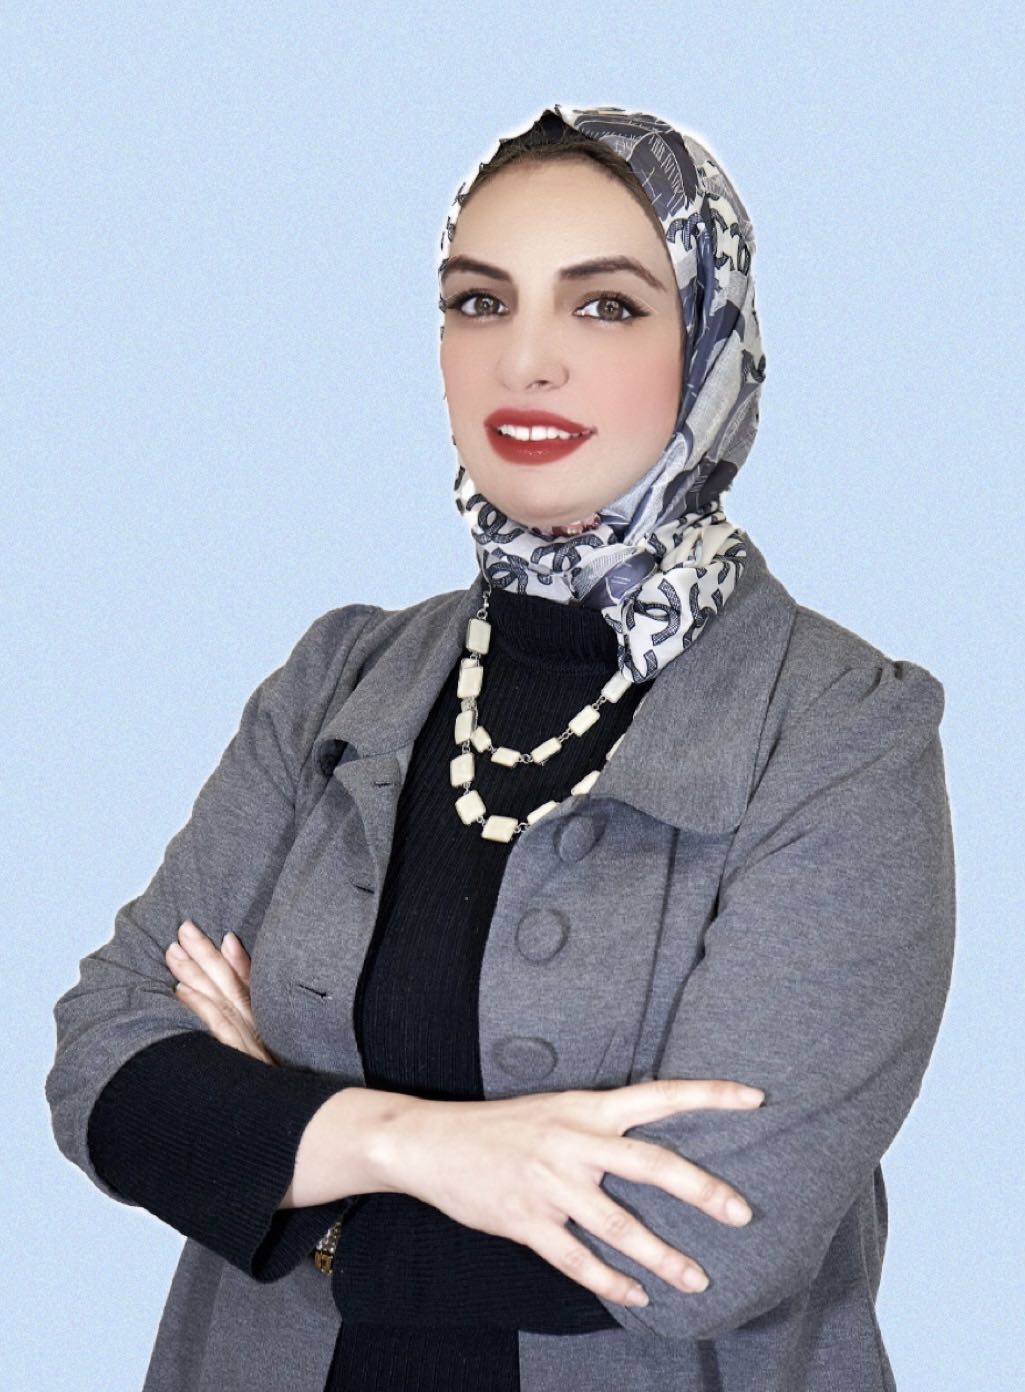 دكتور سمر احمد غازي